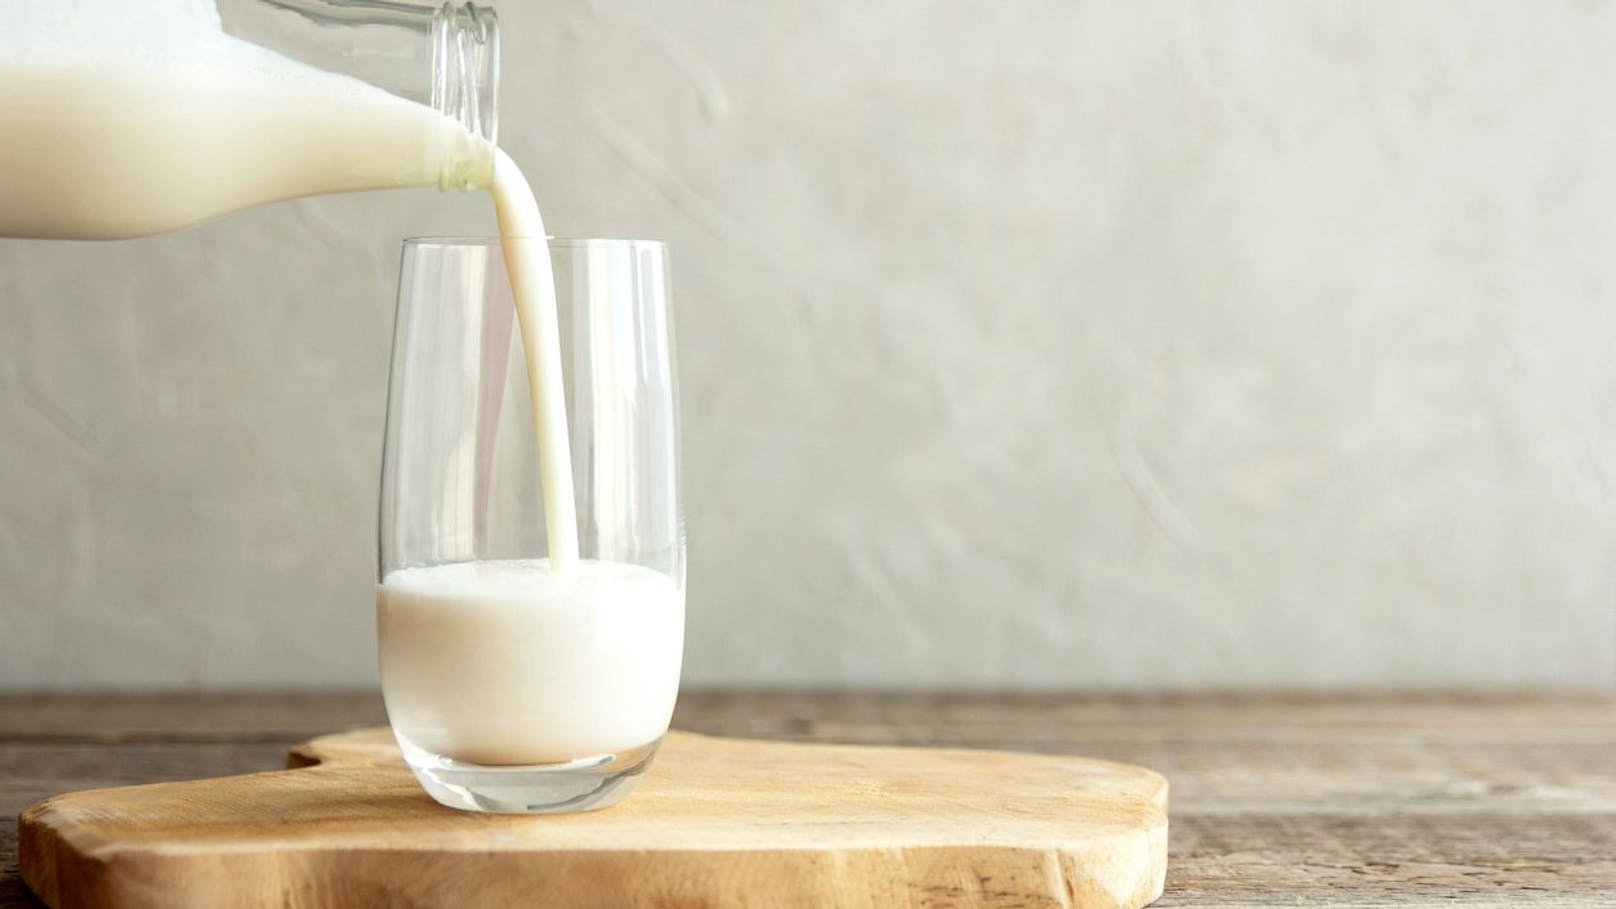 Achte darauf, dass du dich von Milchprodukten&nbsp; fernhältst. Das Getränk bläht deinen Bauch nur noch mehr auf und trägt dazu bei, dass du Lust auf mehr Süßes hast.&nbsp;